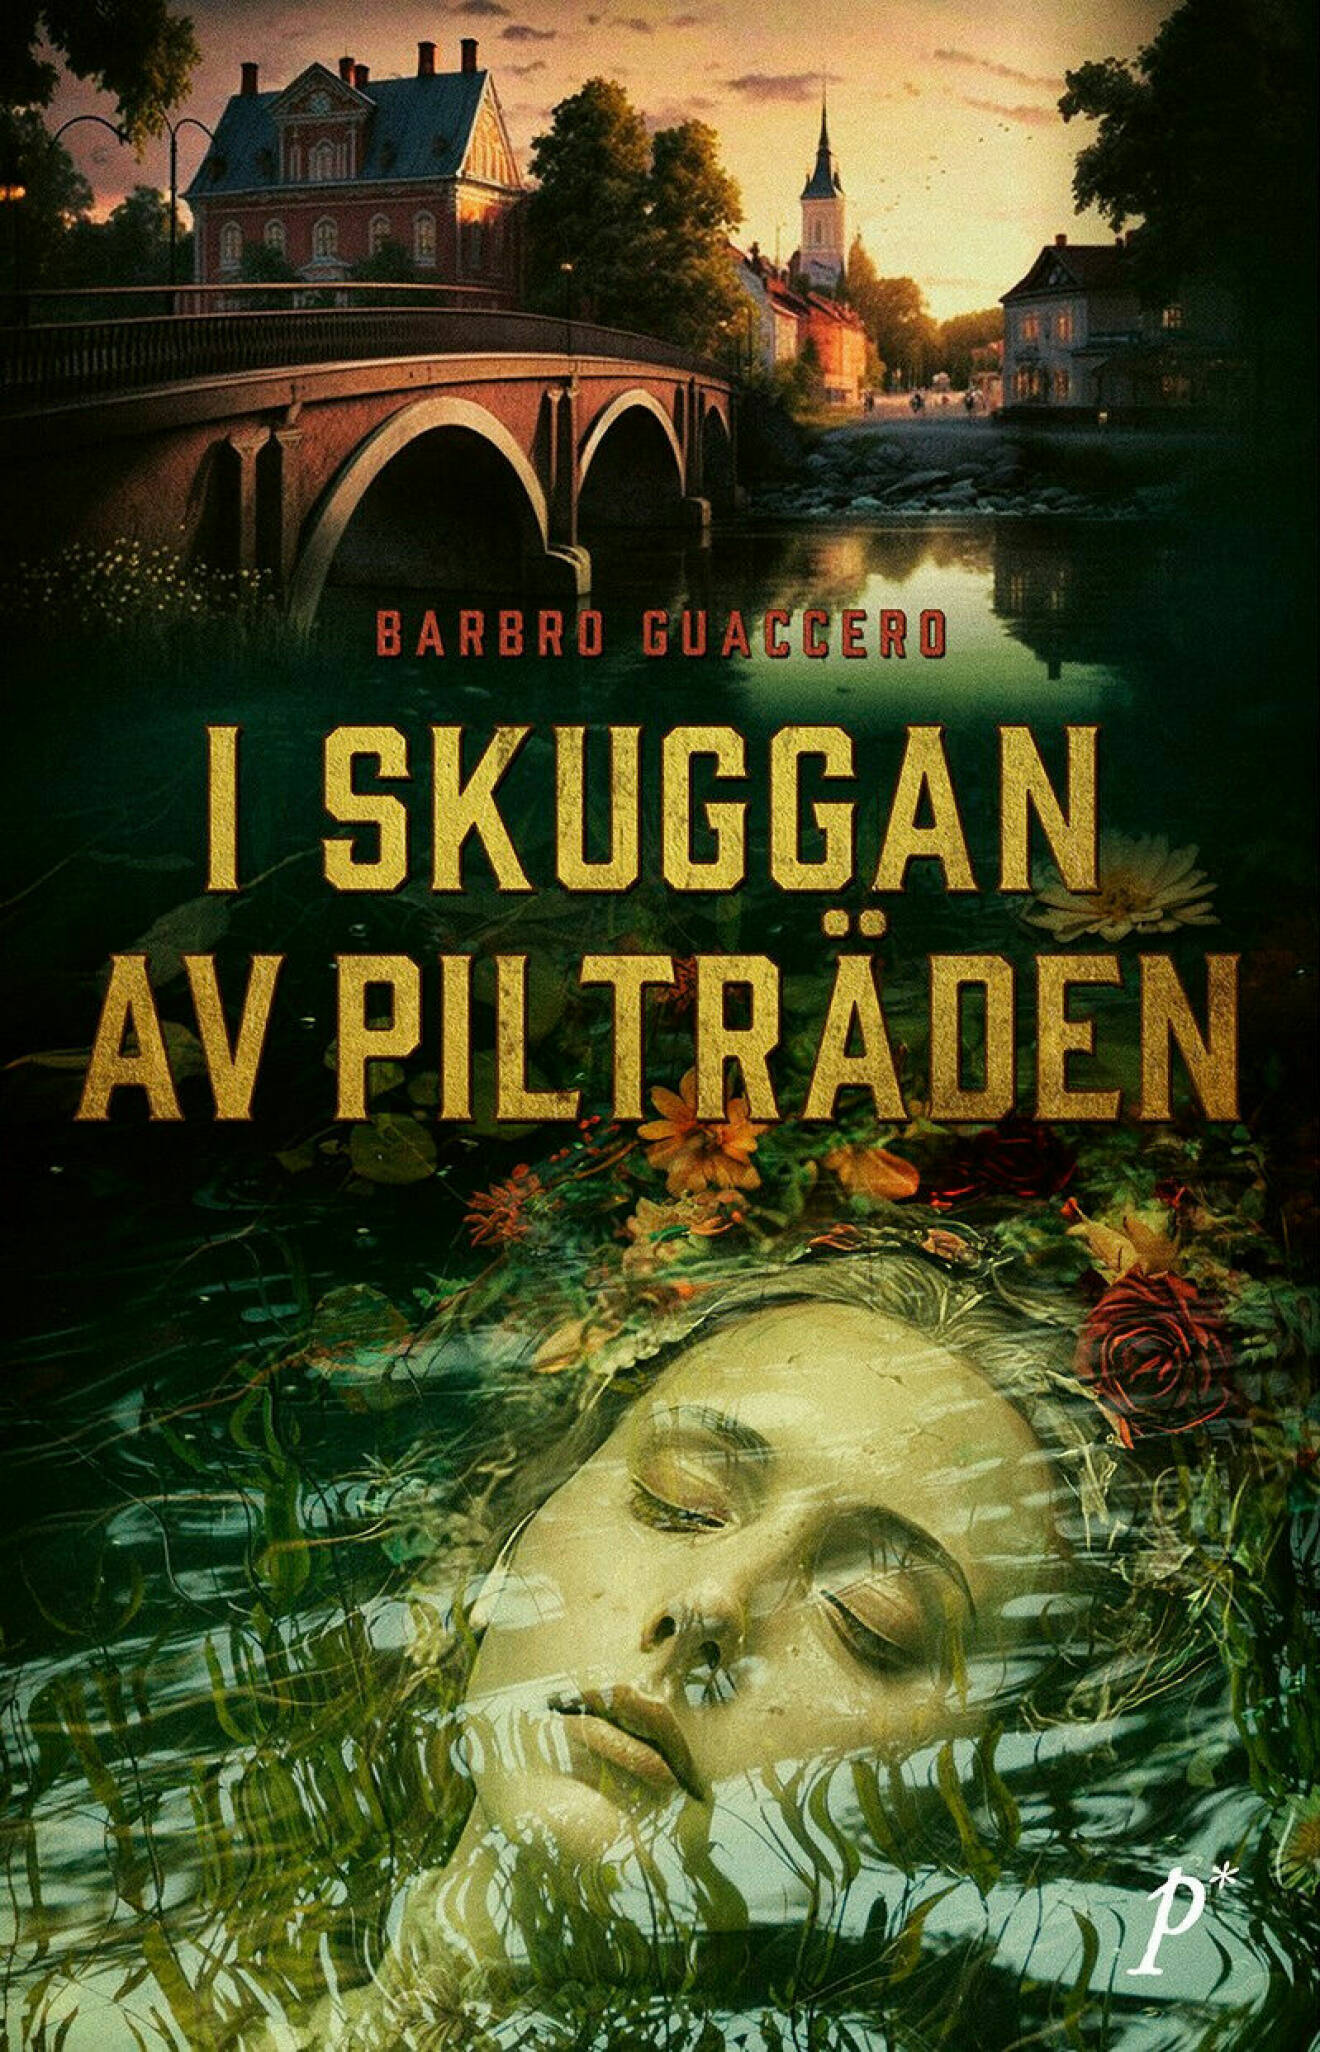 Omslaget på boken I skuggan av pilträden av Barbro Guaccero. Bilden föreställer en kvinna som ligger död i vattnet, omgiven av blommor, i bakgrunden en bro över ån och en stadsmiljö med kyrktorn.